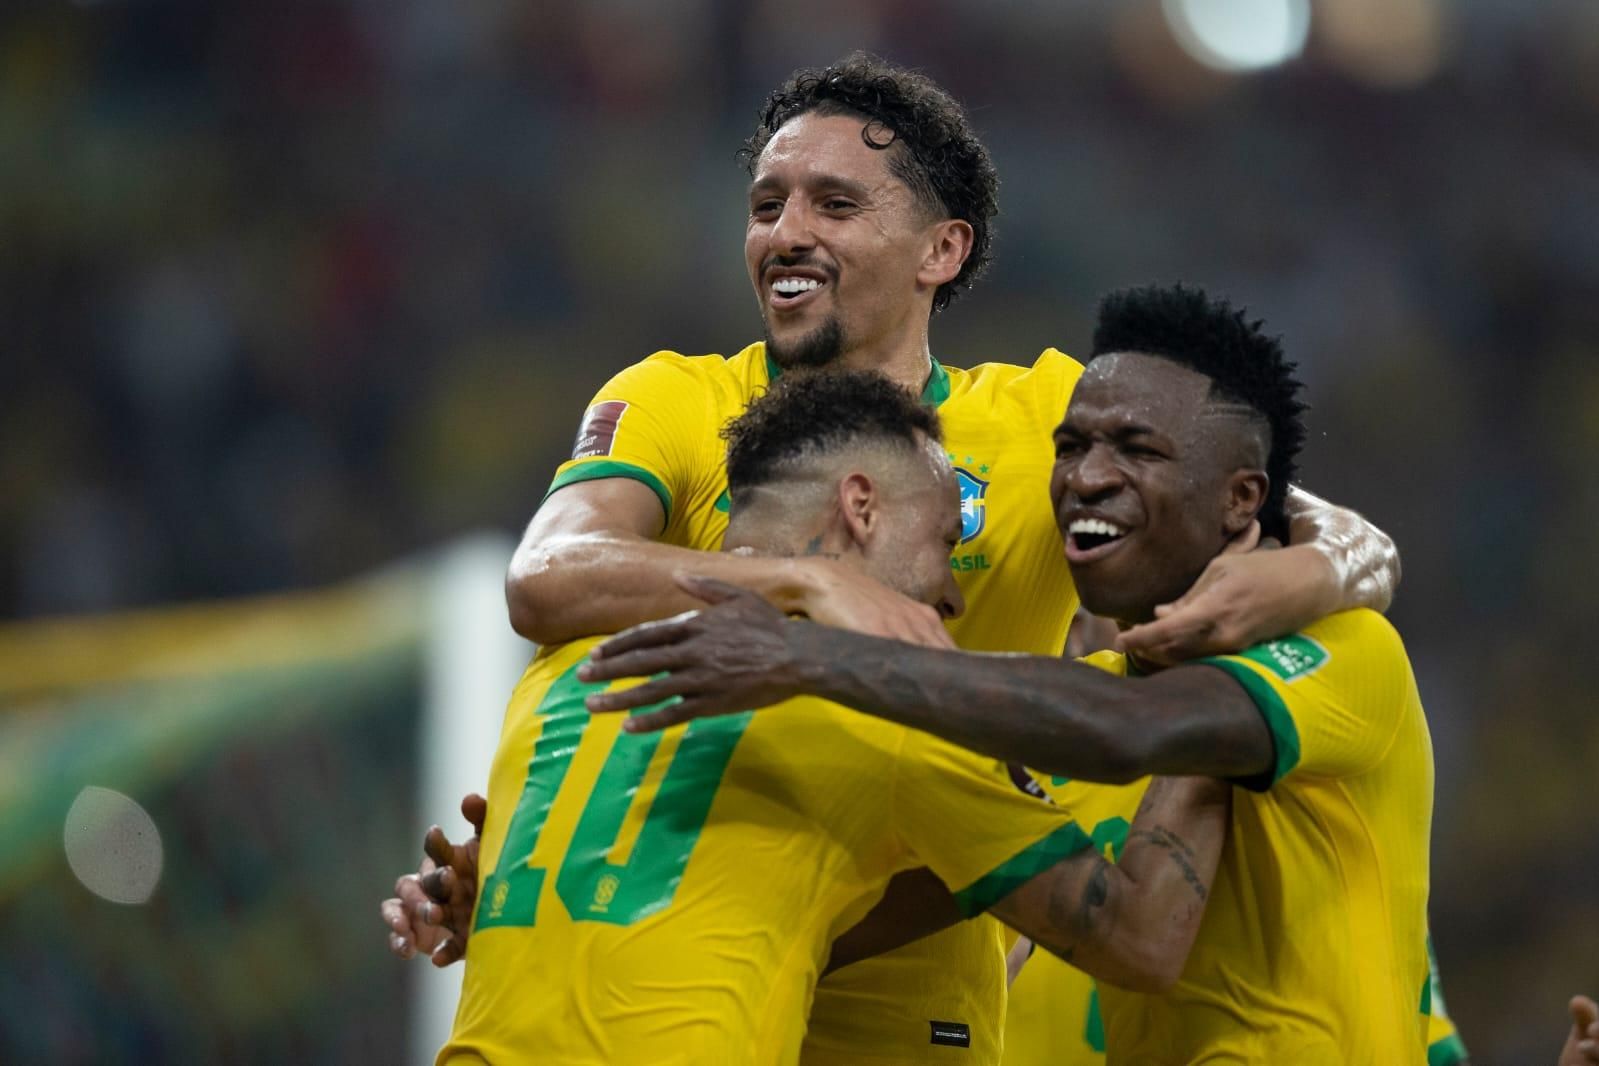 É hoje! Brasil enfrenta o Chile na última partida antes da Copa